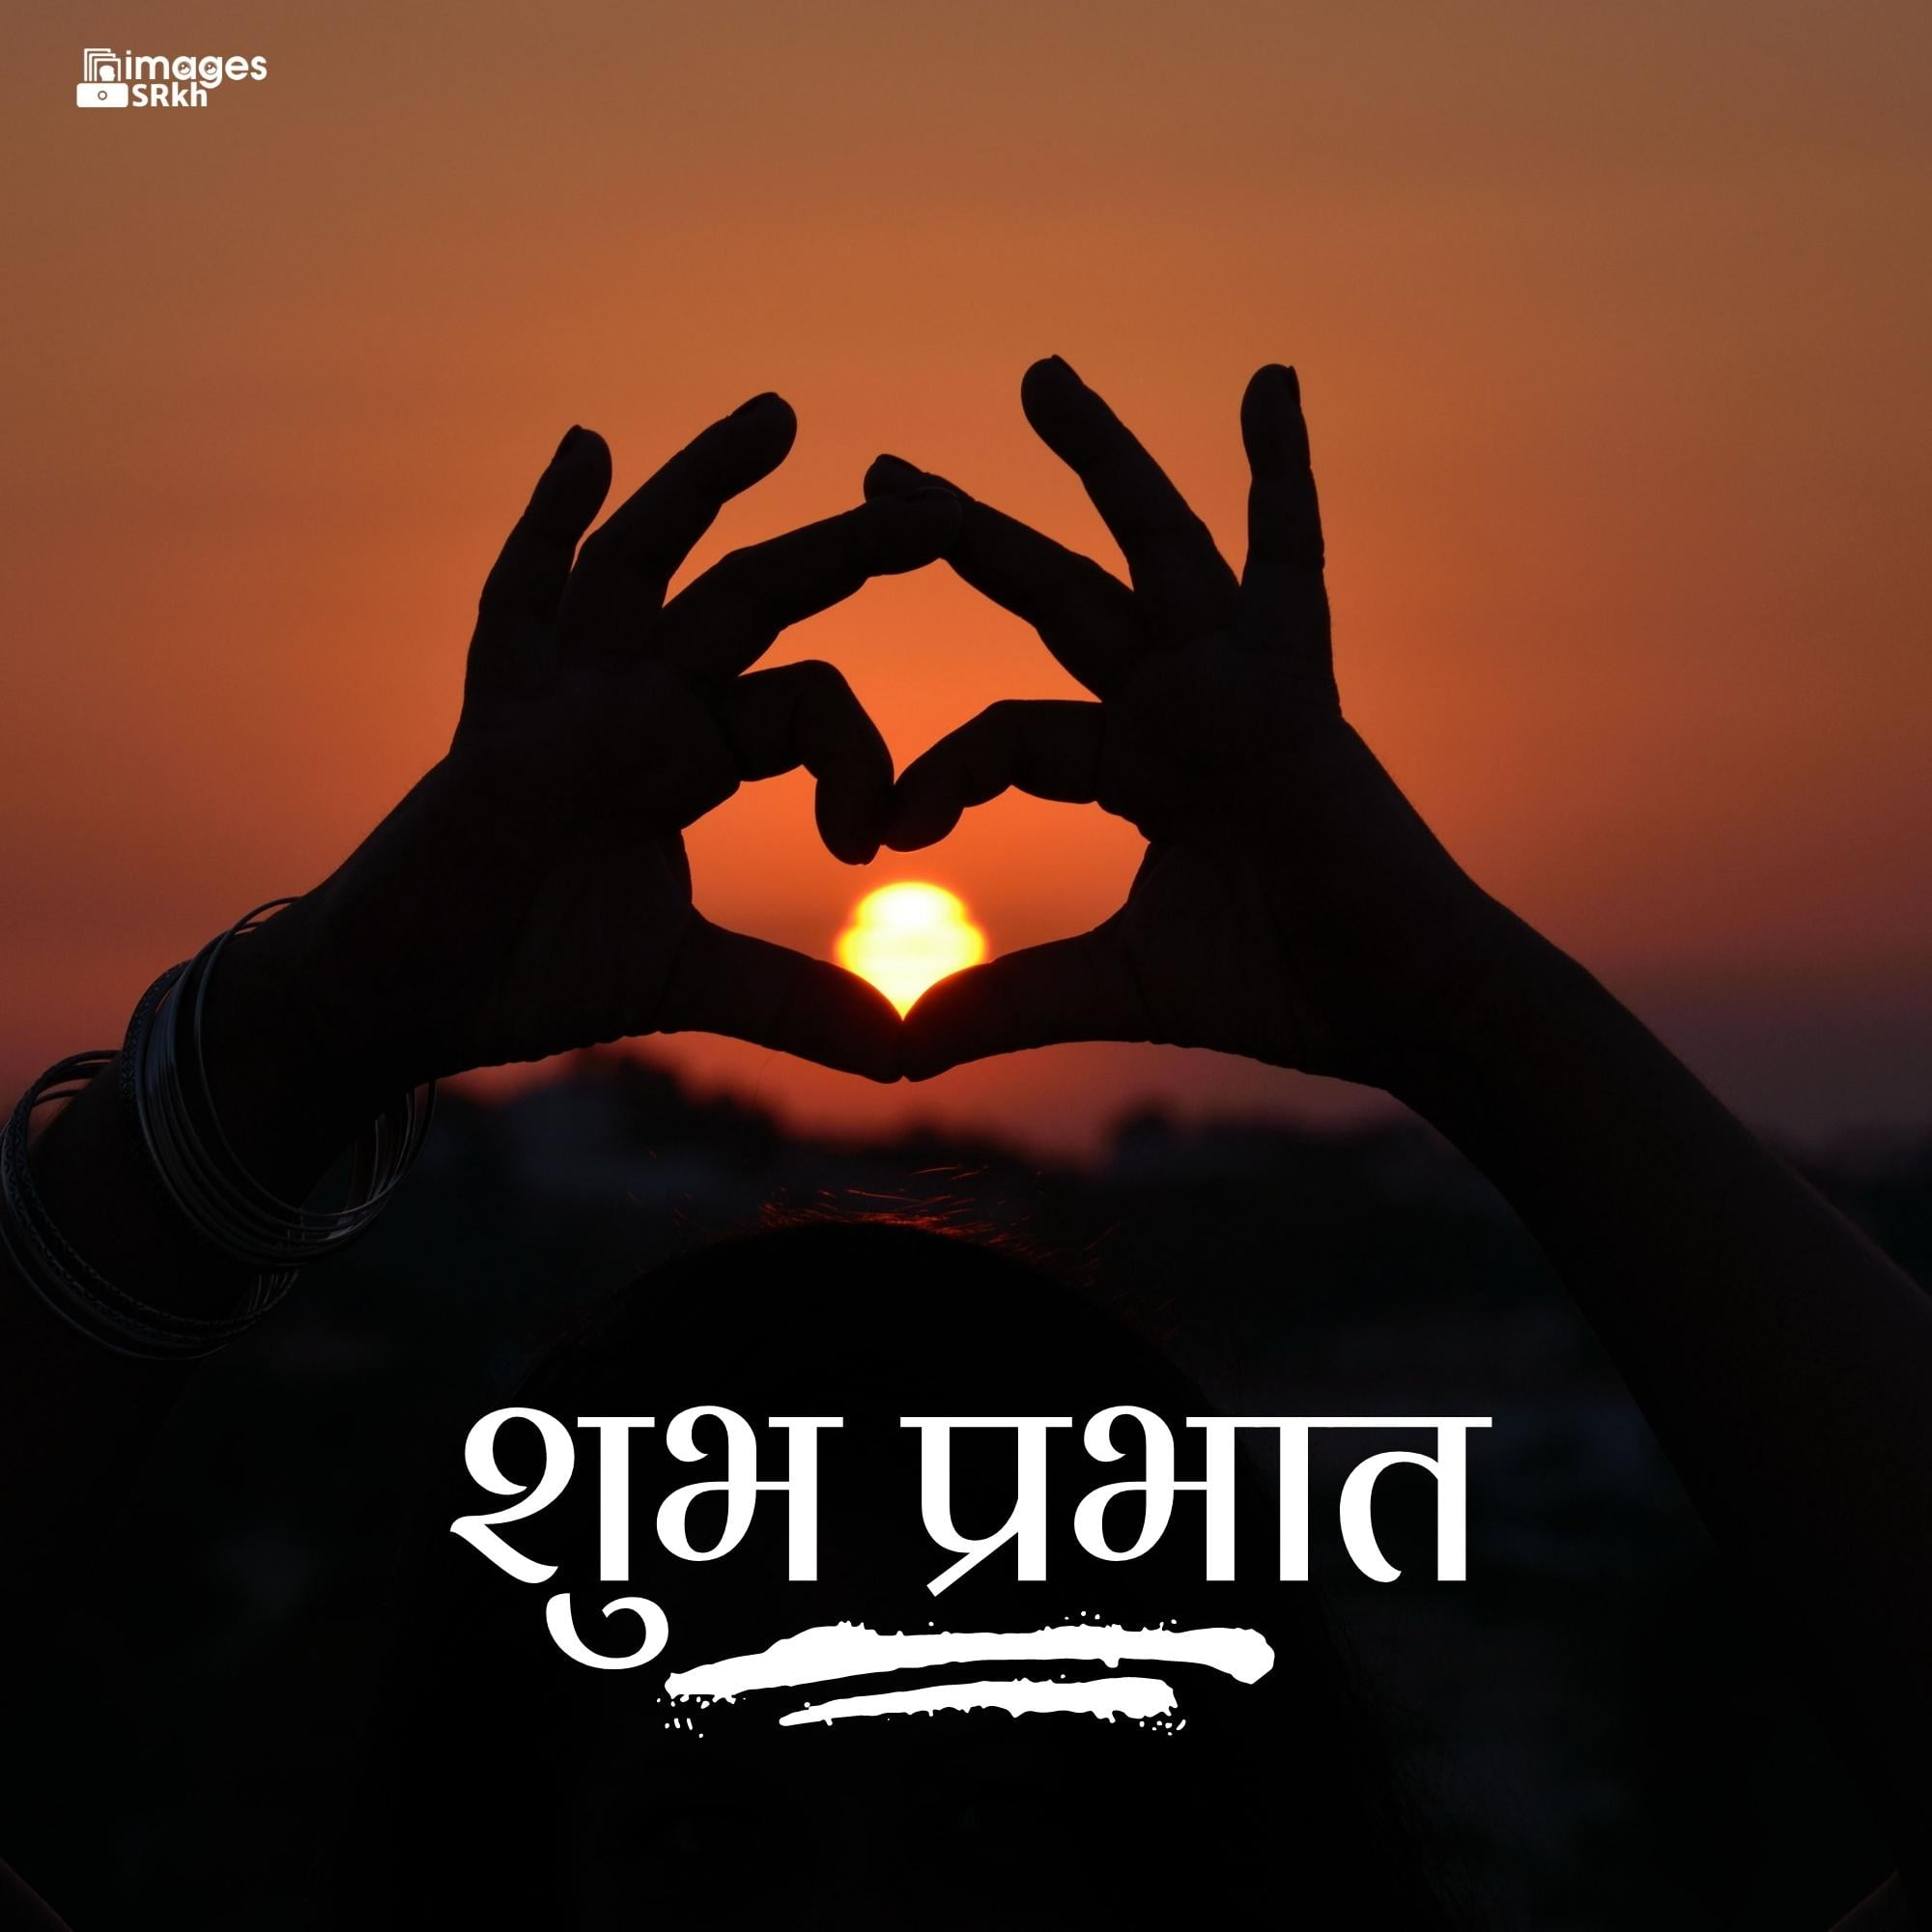 Love Hindi Good Morning Images